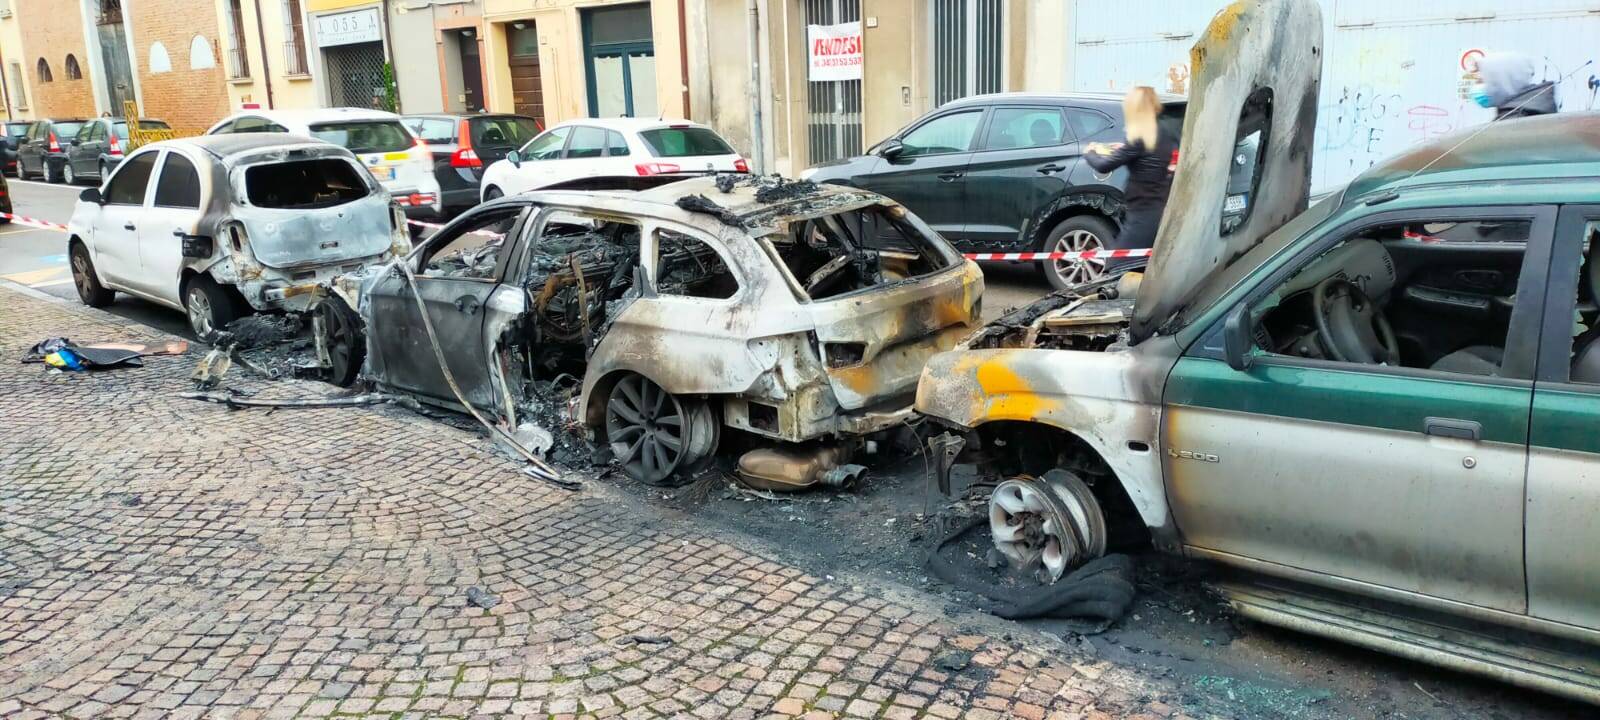 Via Filippo Re, due auto distrutte dalle fiamme